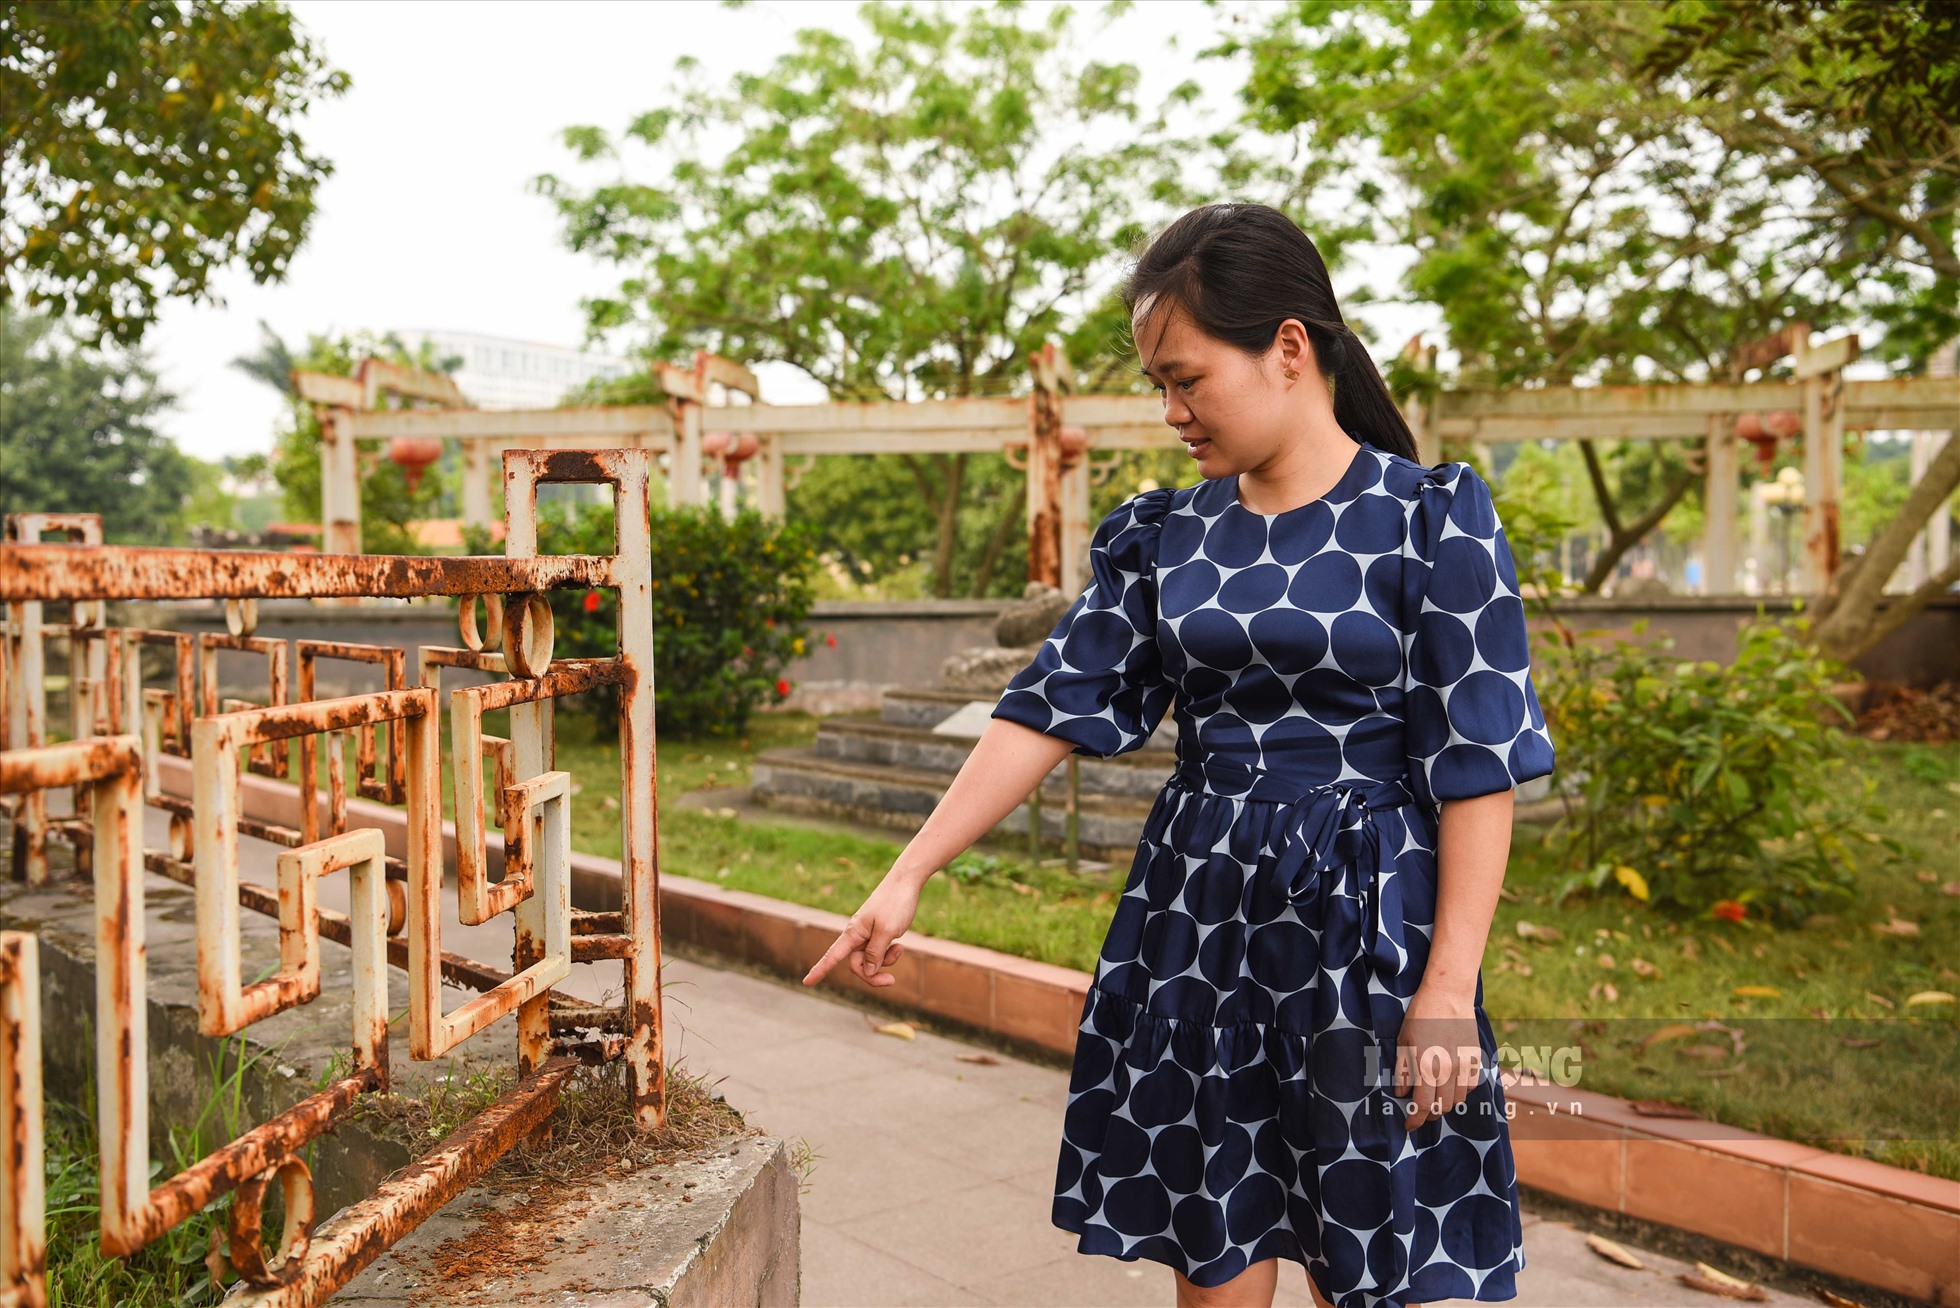 Nhân viên tại bảo tàng tỉnh Bắc Ninh chỉ ra một số khu vực hàng rào sắt bị hoen rỉ, xuống cấp nghiêm trọng. Ảnh: Trần Tuấn